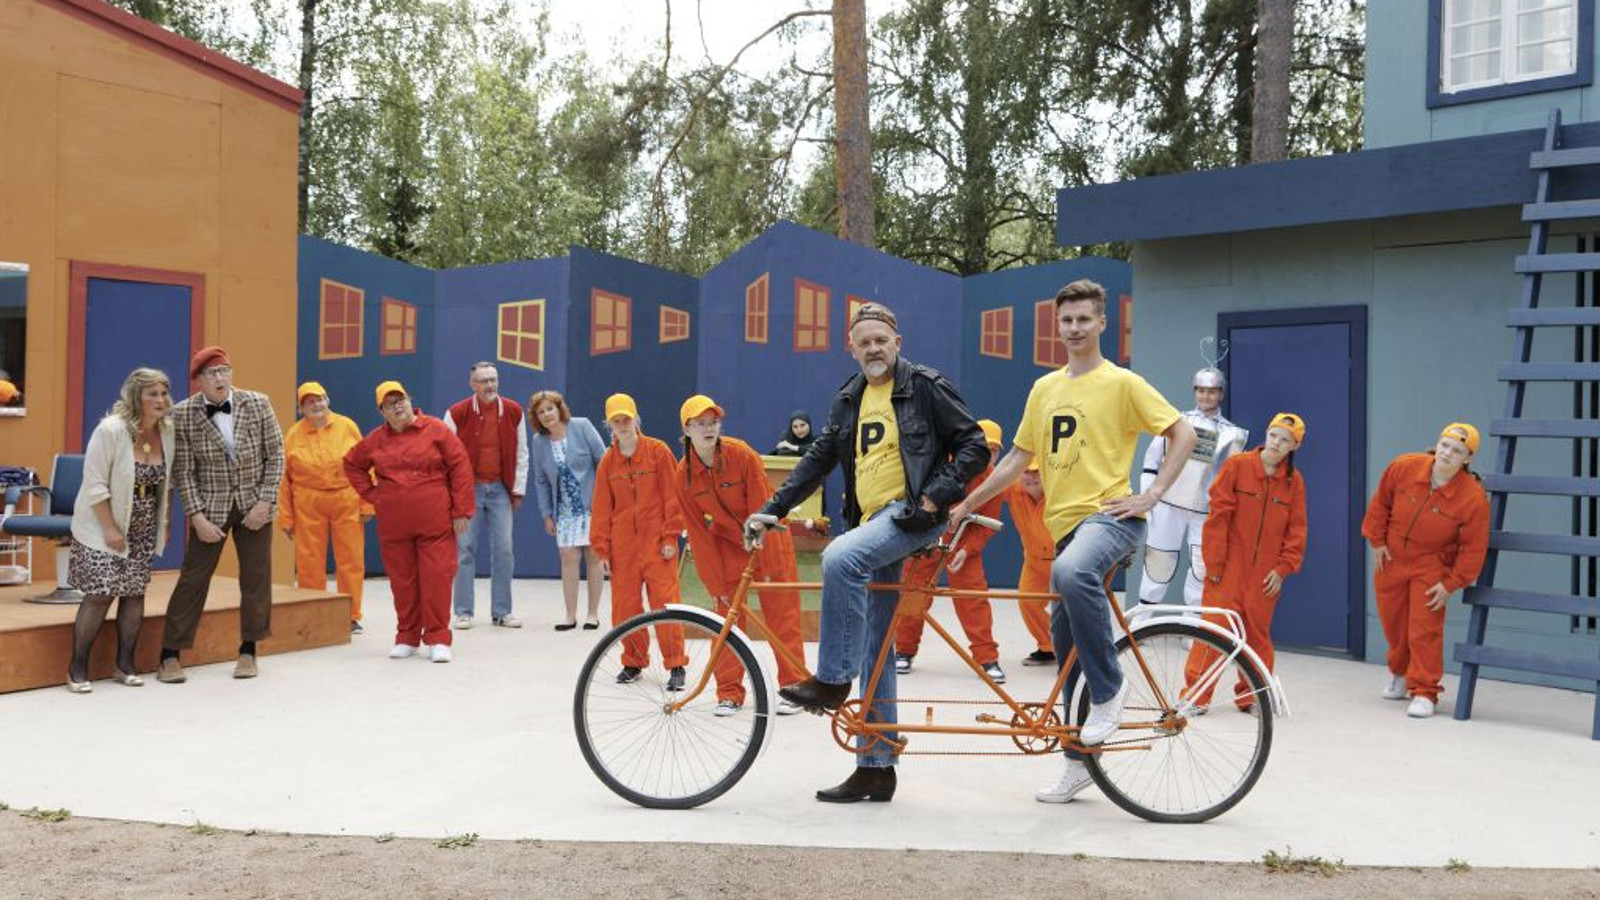 Kuvassa on etualalla kaksi miestä tandempyörällä ja taustalla ovat näyttelijät rivissä katsomassa heitä.